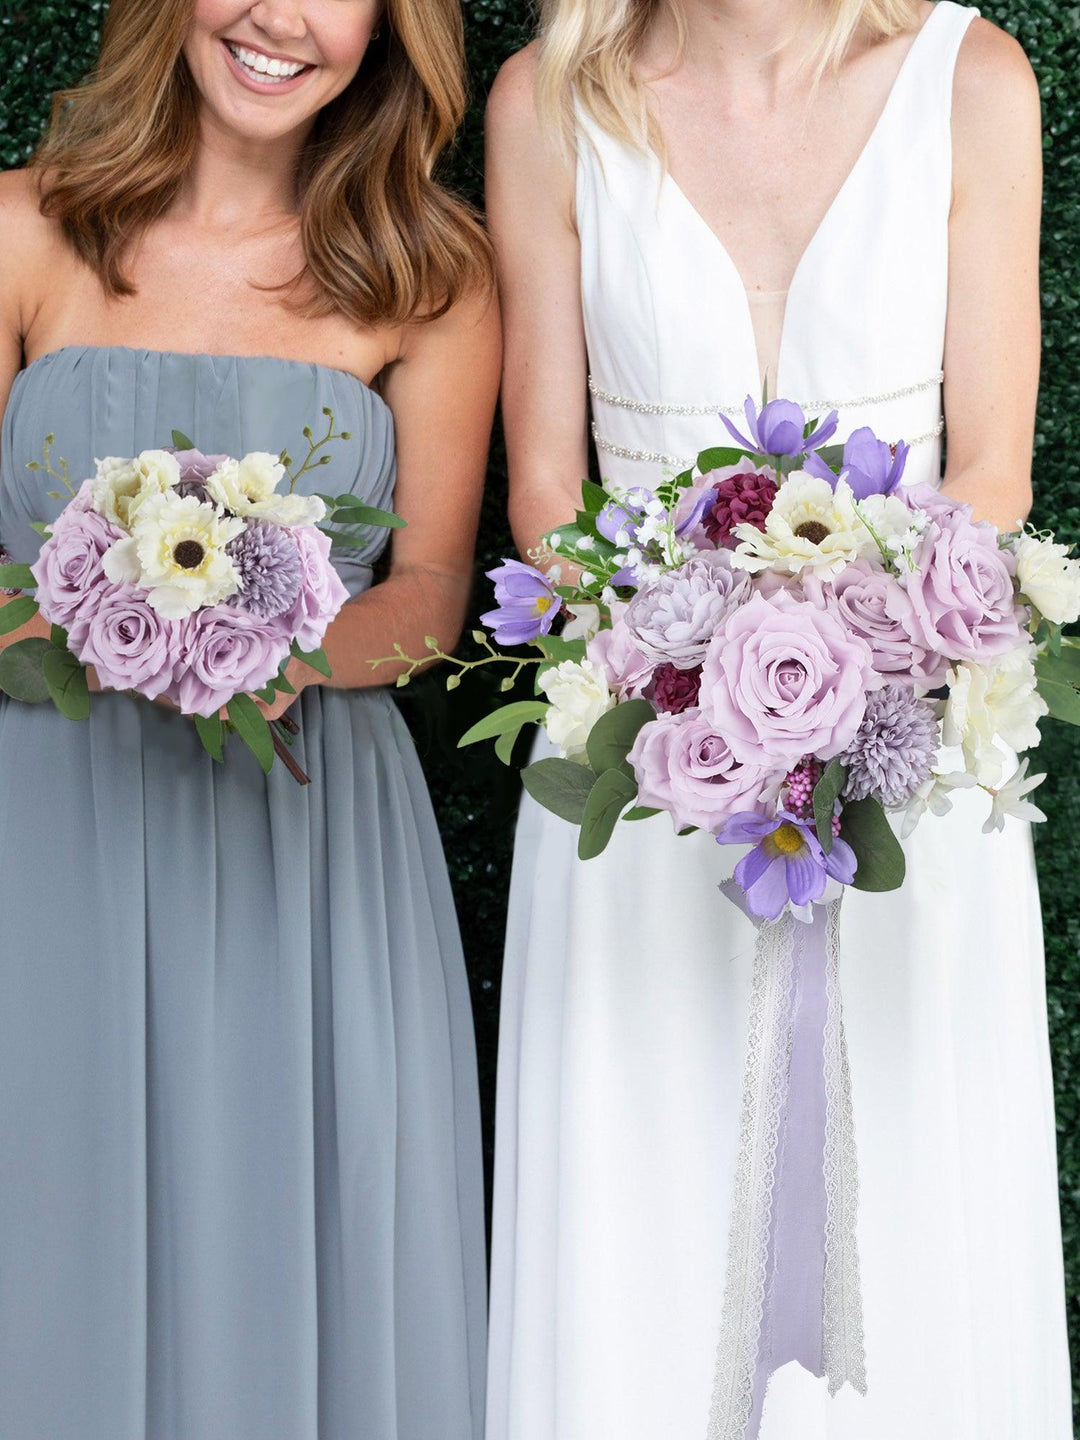 11.7 inch wide Pastel Purple Bridal Bouquet